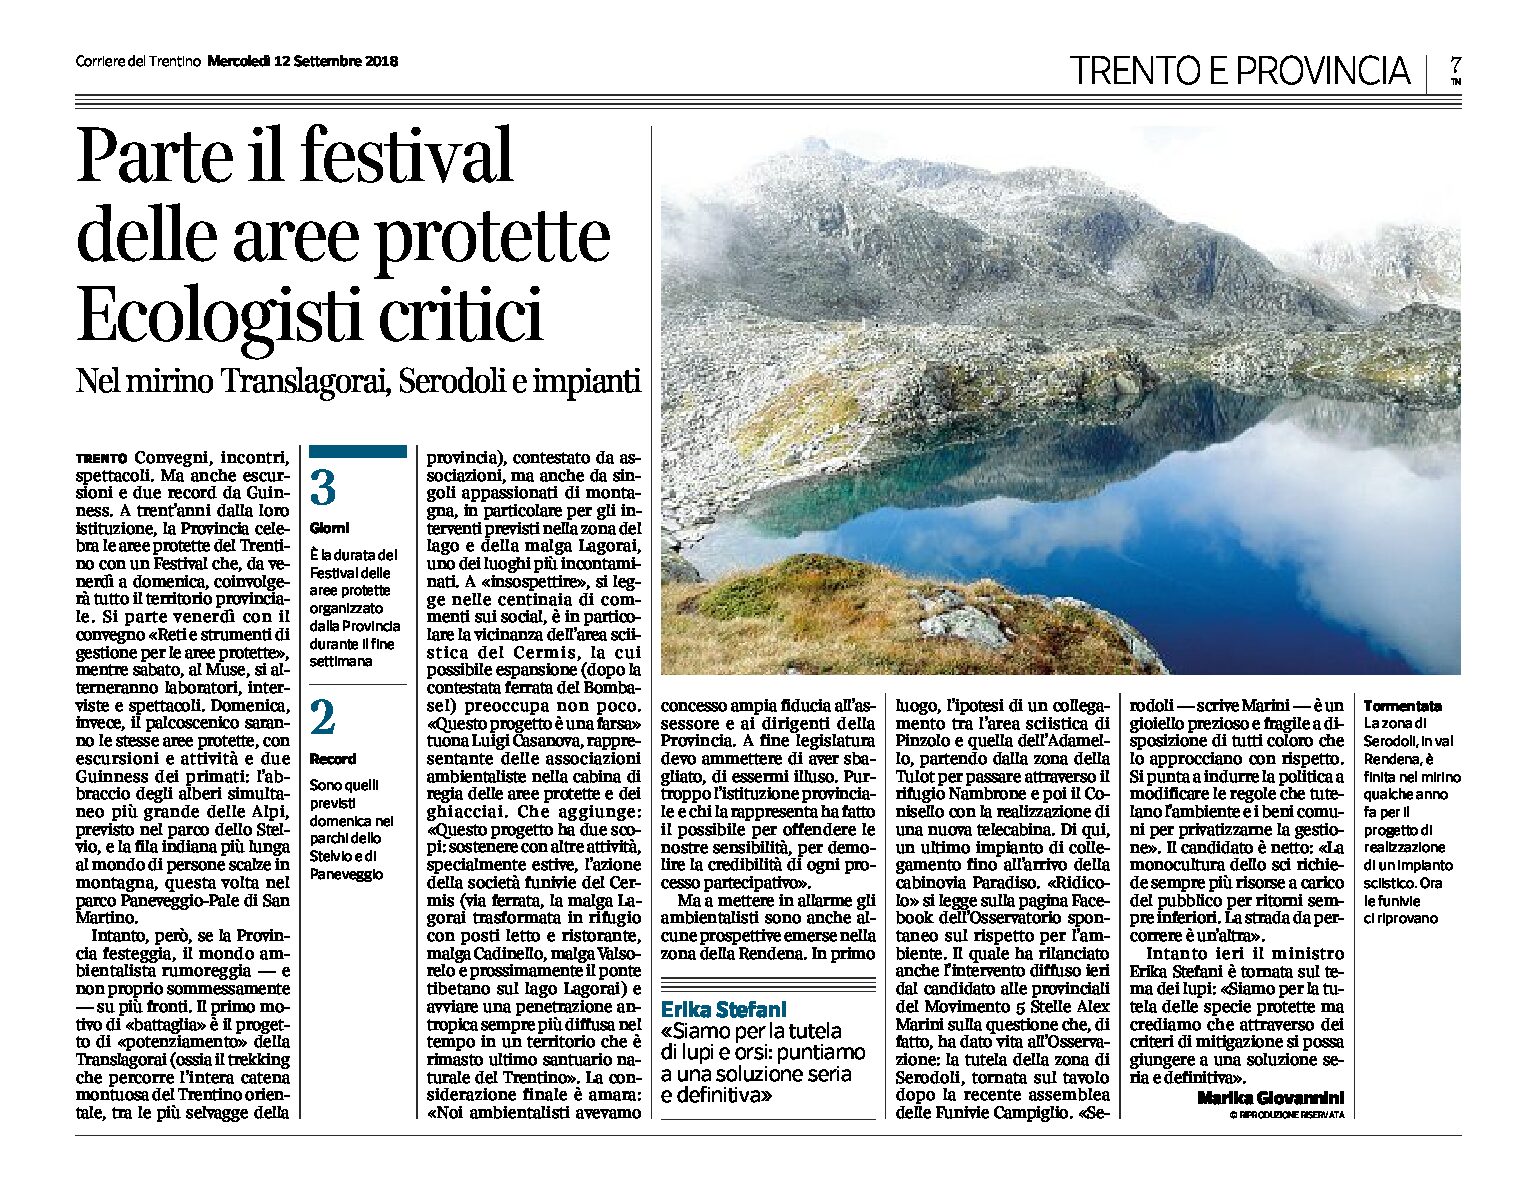 Trento: parte il festival delle aree protette. Ecologisti critici